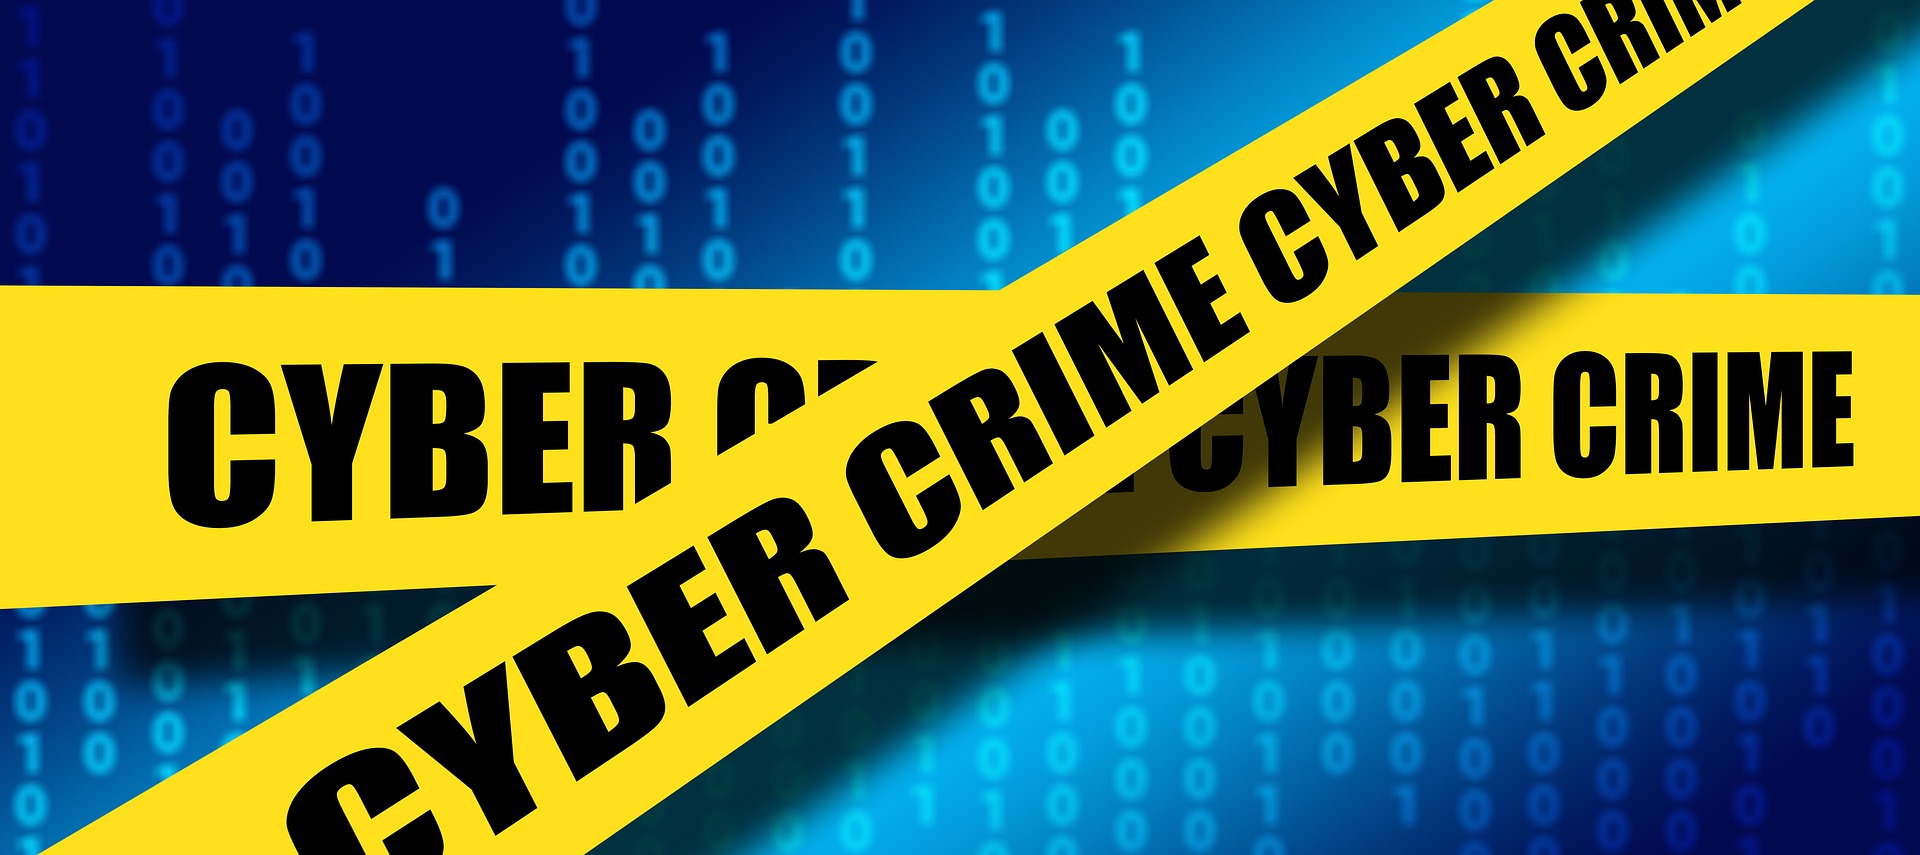 phishing is cyber crime